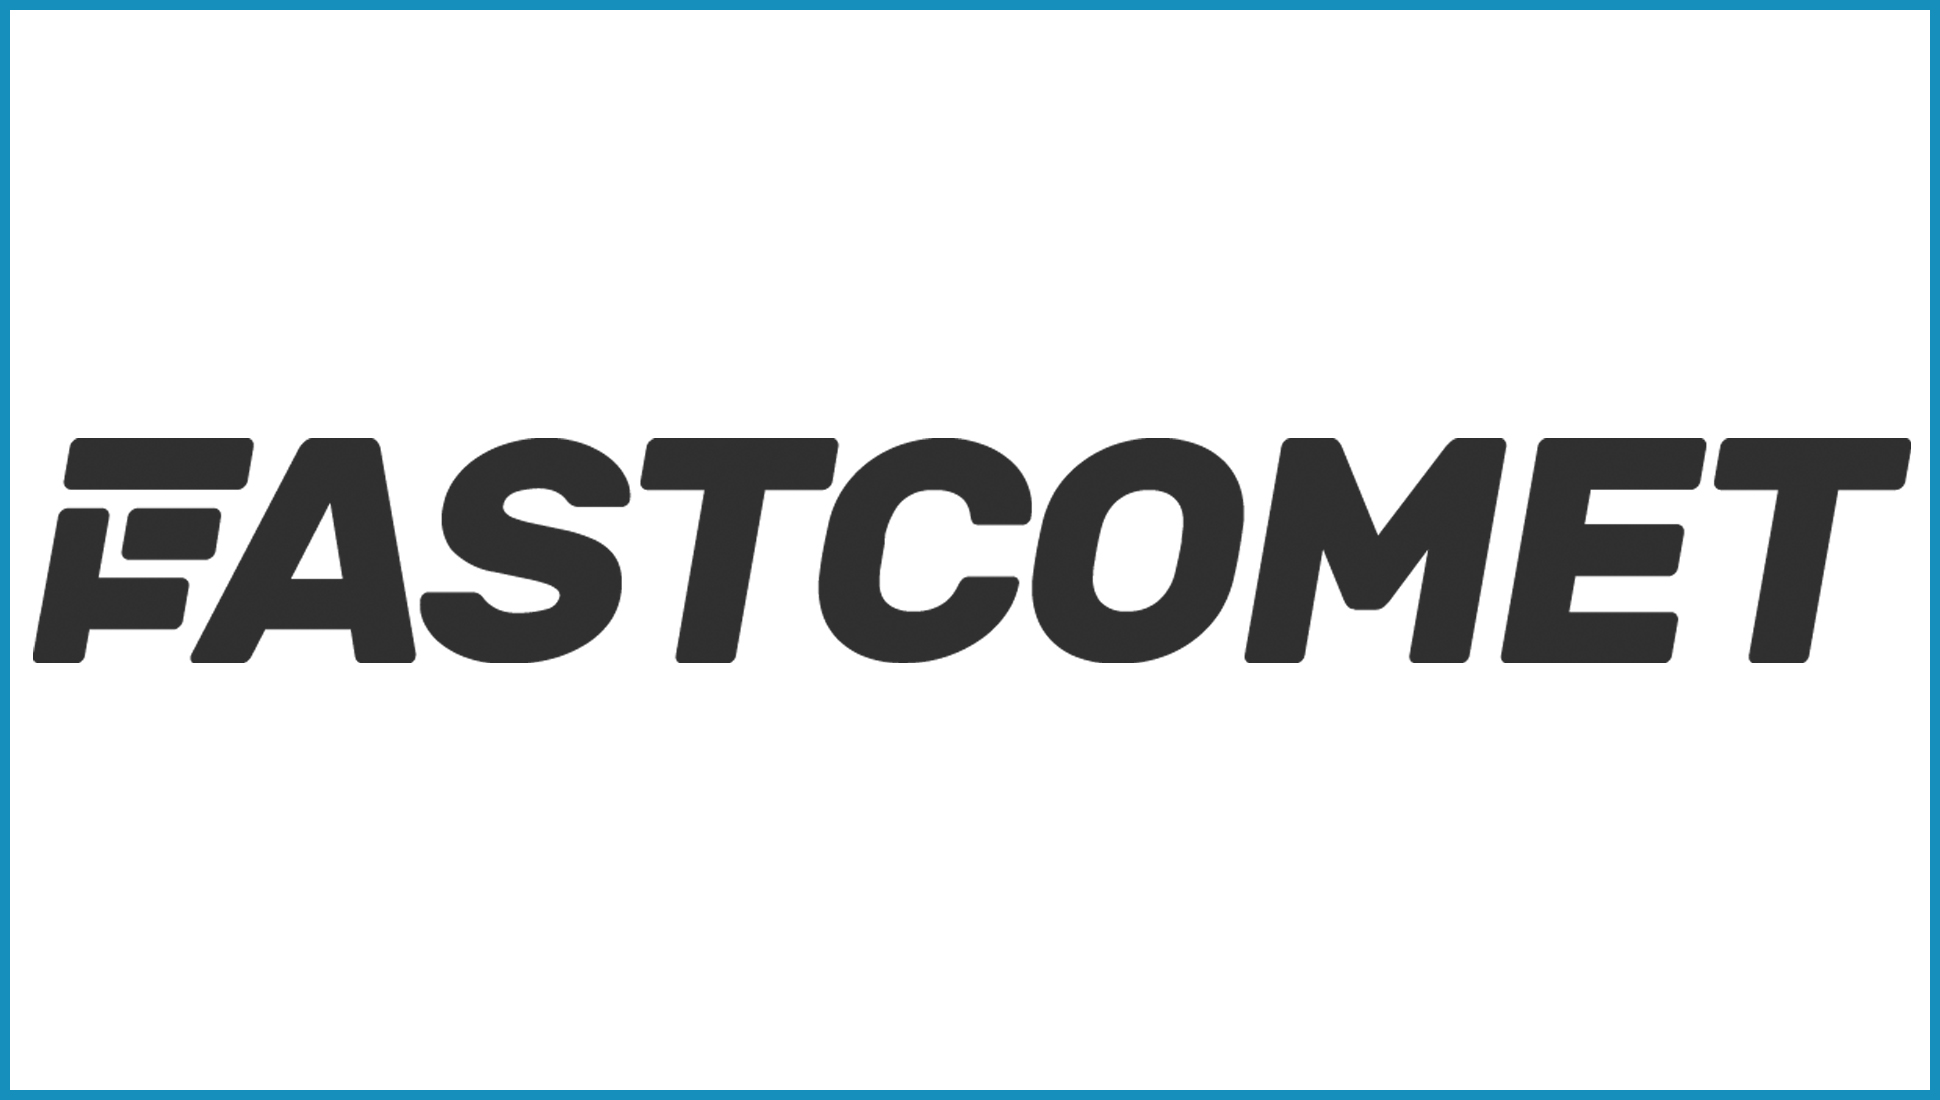 FastComet logosu